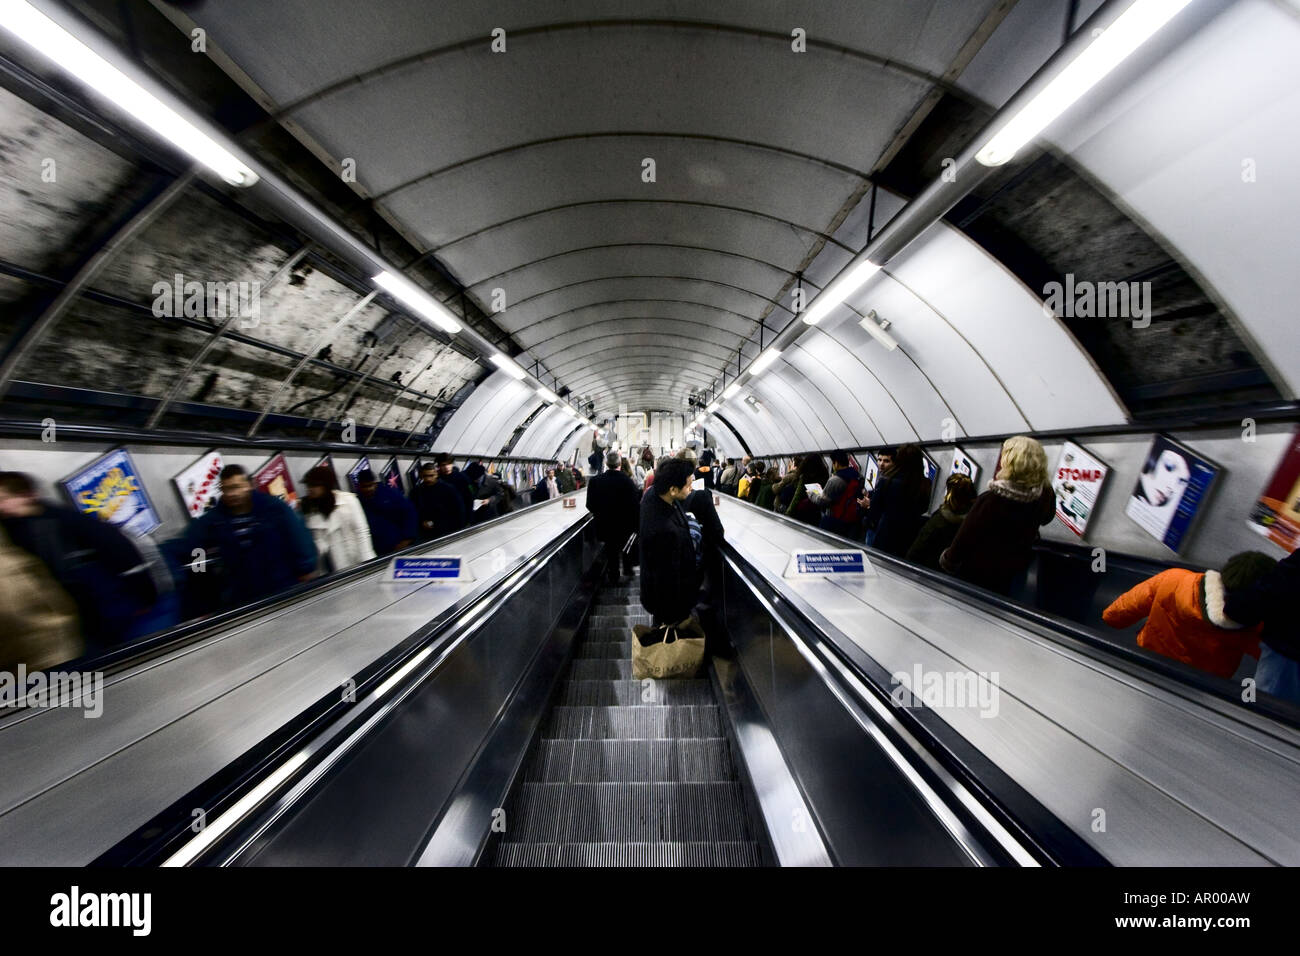 Menschen aufsteigen und absteigen Rolltreppen in der Londoner U-Bahn auch bekannt als The Tube in London UK 12 5 2007 Stockfoto